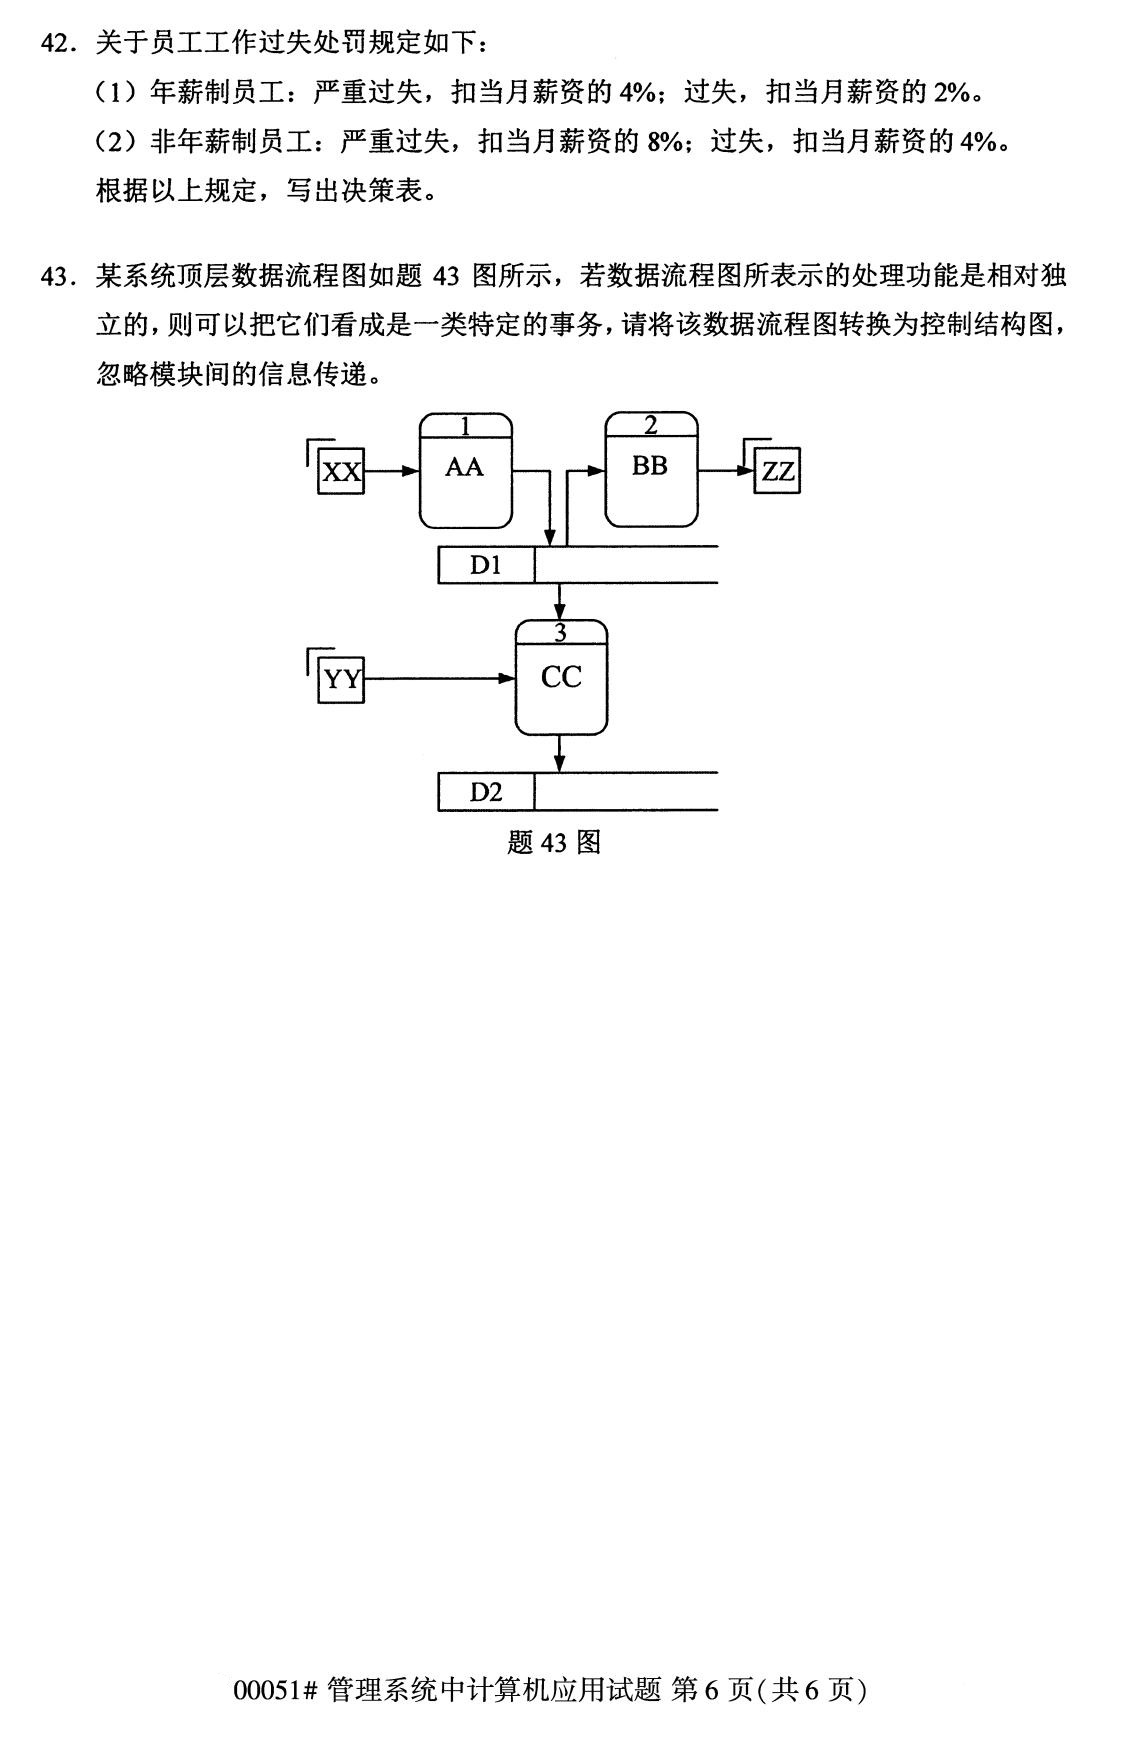 2020年8月辽宁省自学考试本科管理系统中计算机应用真题(图6)